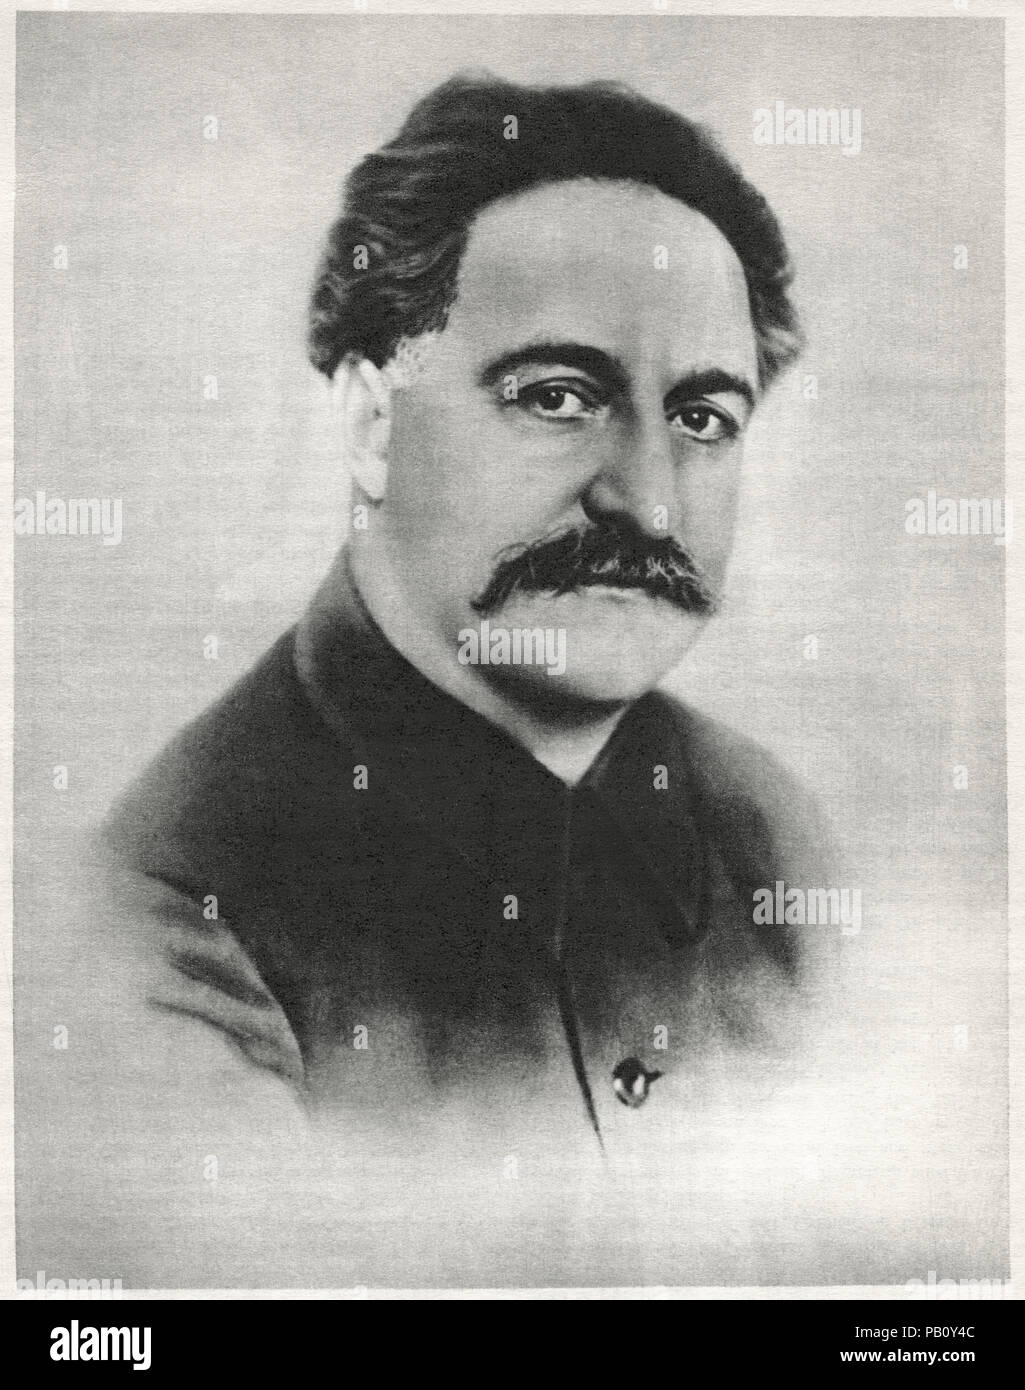 Grigory Orjonikidze (186-1937), Georgiano bolscevico, membro della CPSU Politburo e stretto collaboratore di Joseph Stalin, testa e spalle ritratto Foto Stock